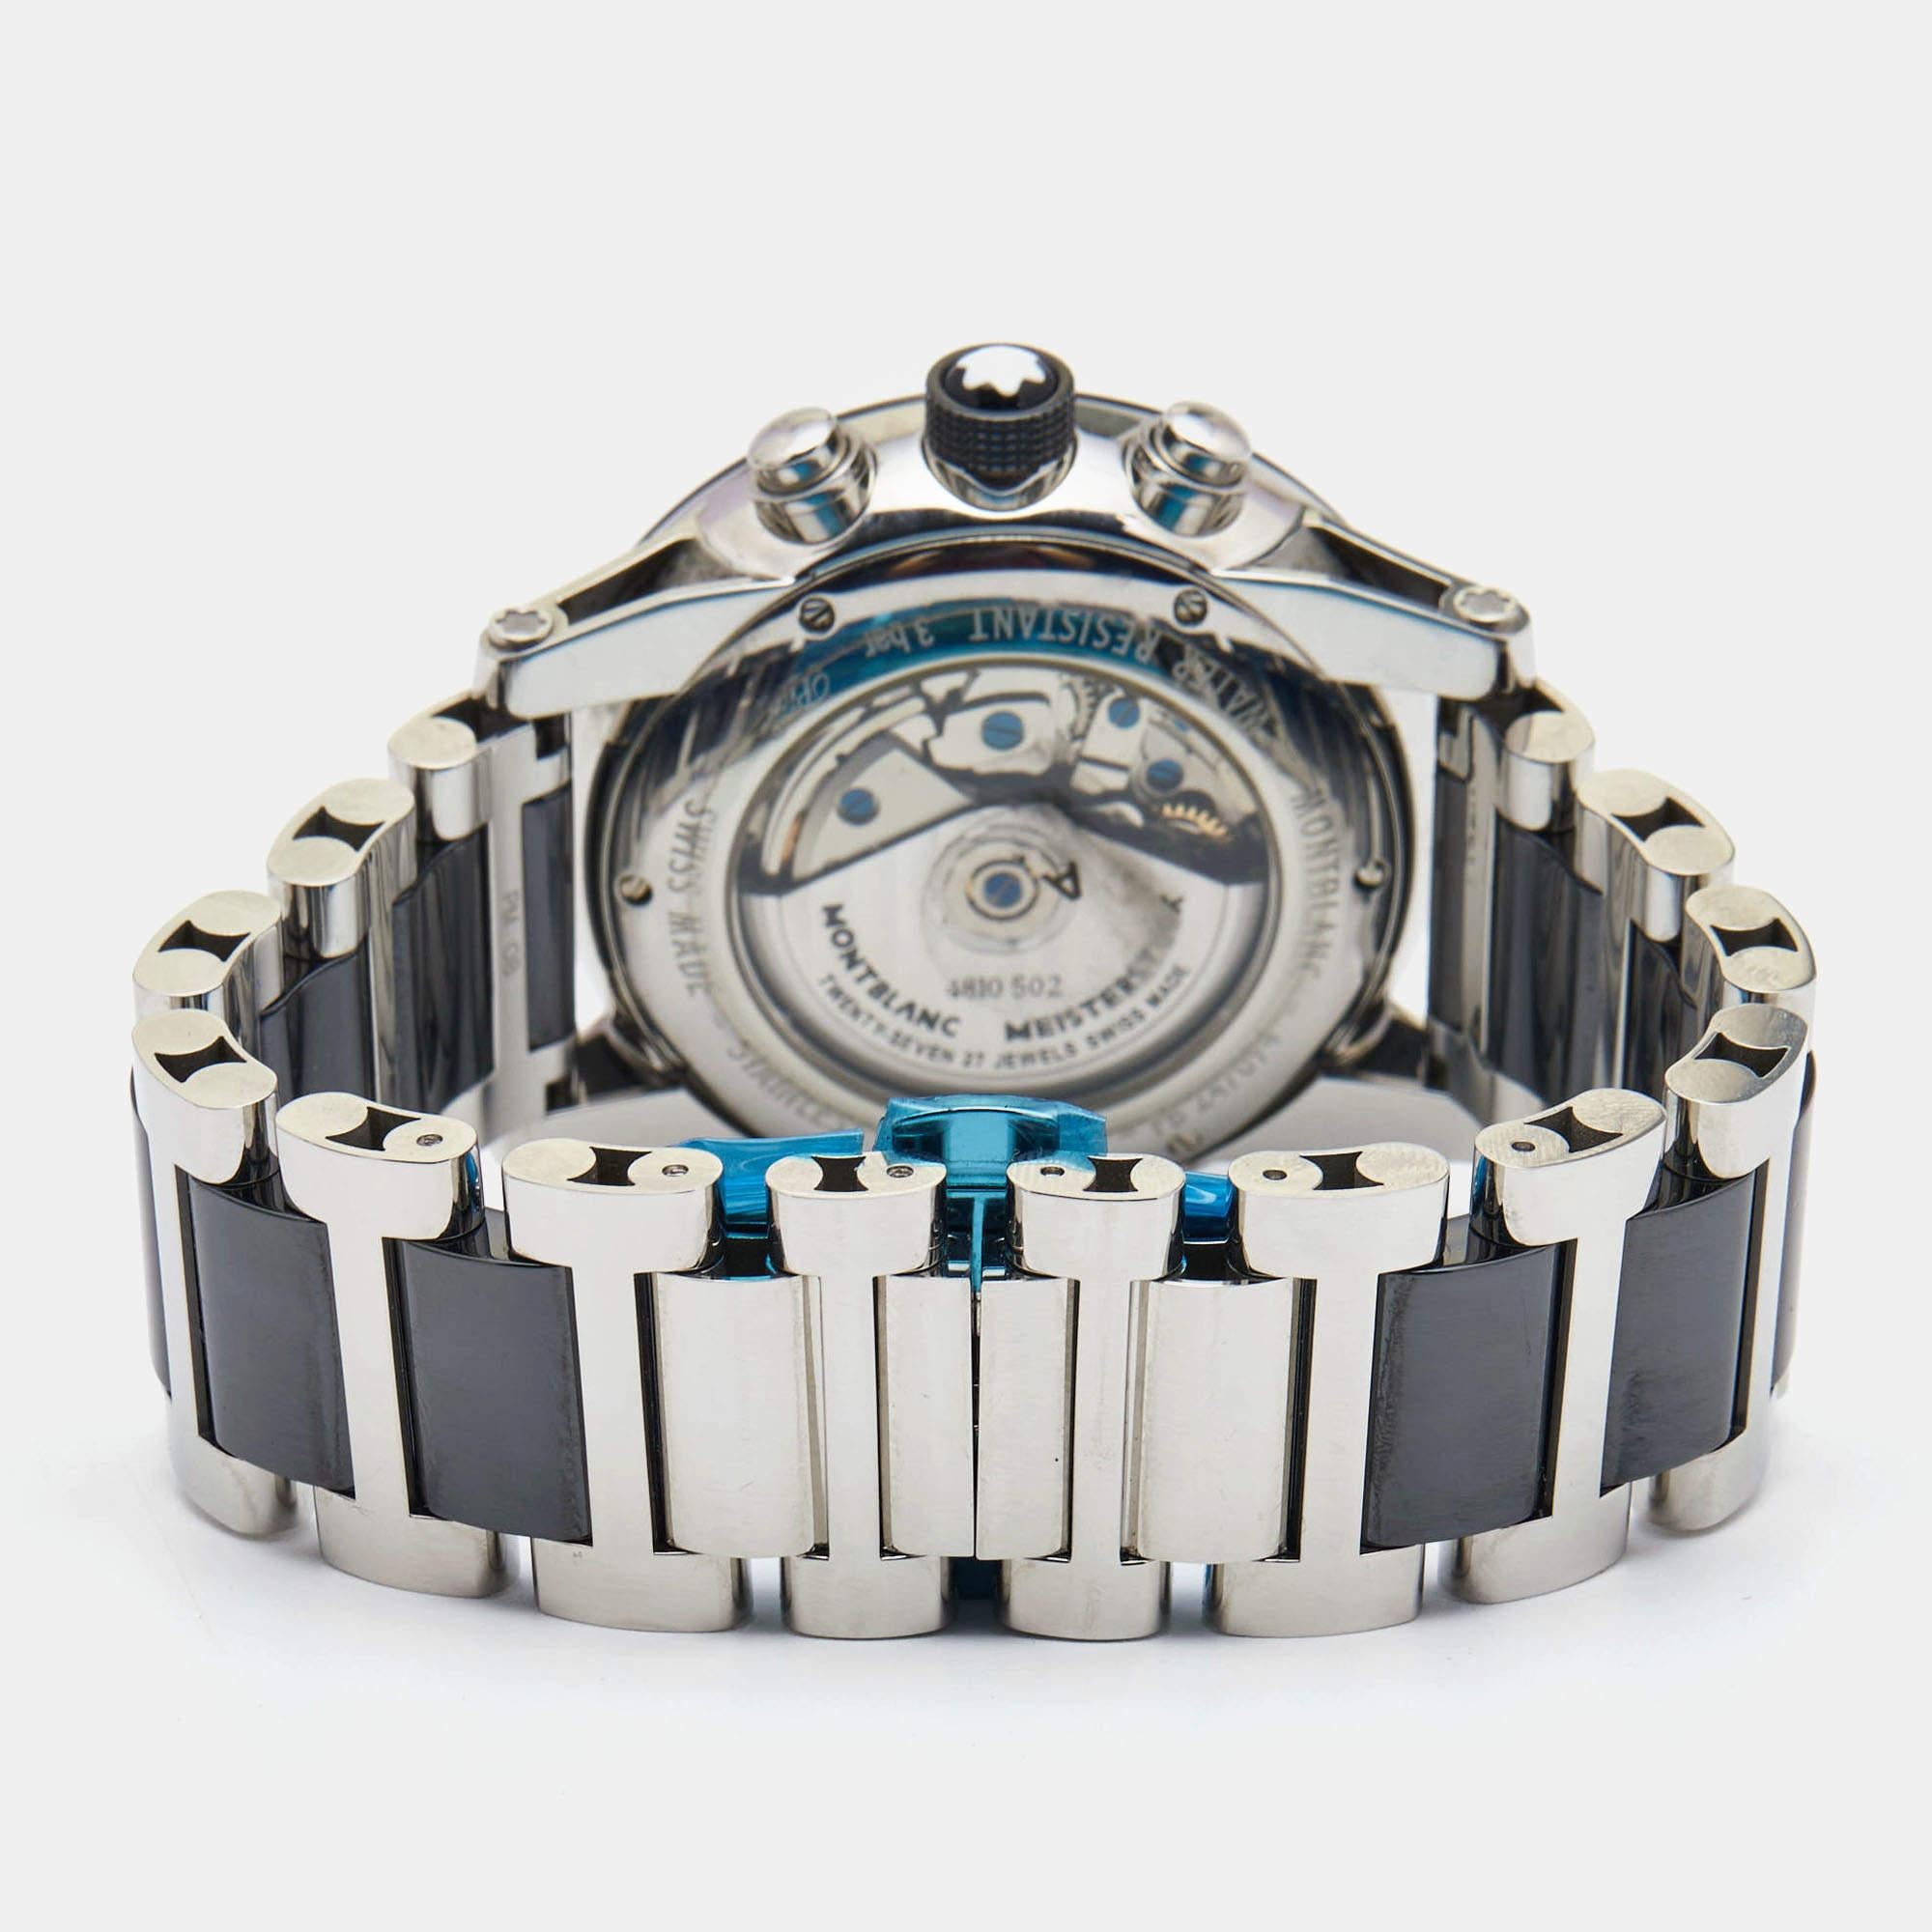 Cette montre-bracelet Montblanc Timewalker est un accessoire de choix à associer à vos tenues décontractées de jour comme à vos looks plus élégants. Elle est indispensable à tous ceux qui ont un goût classique. Exemple de la finesse artistique du